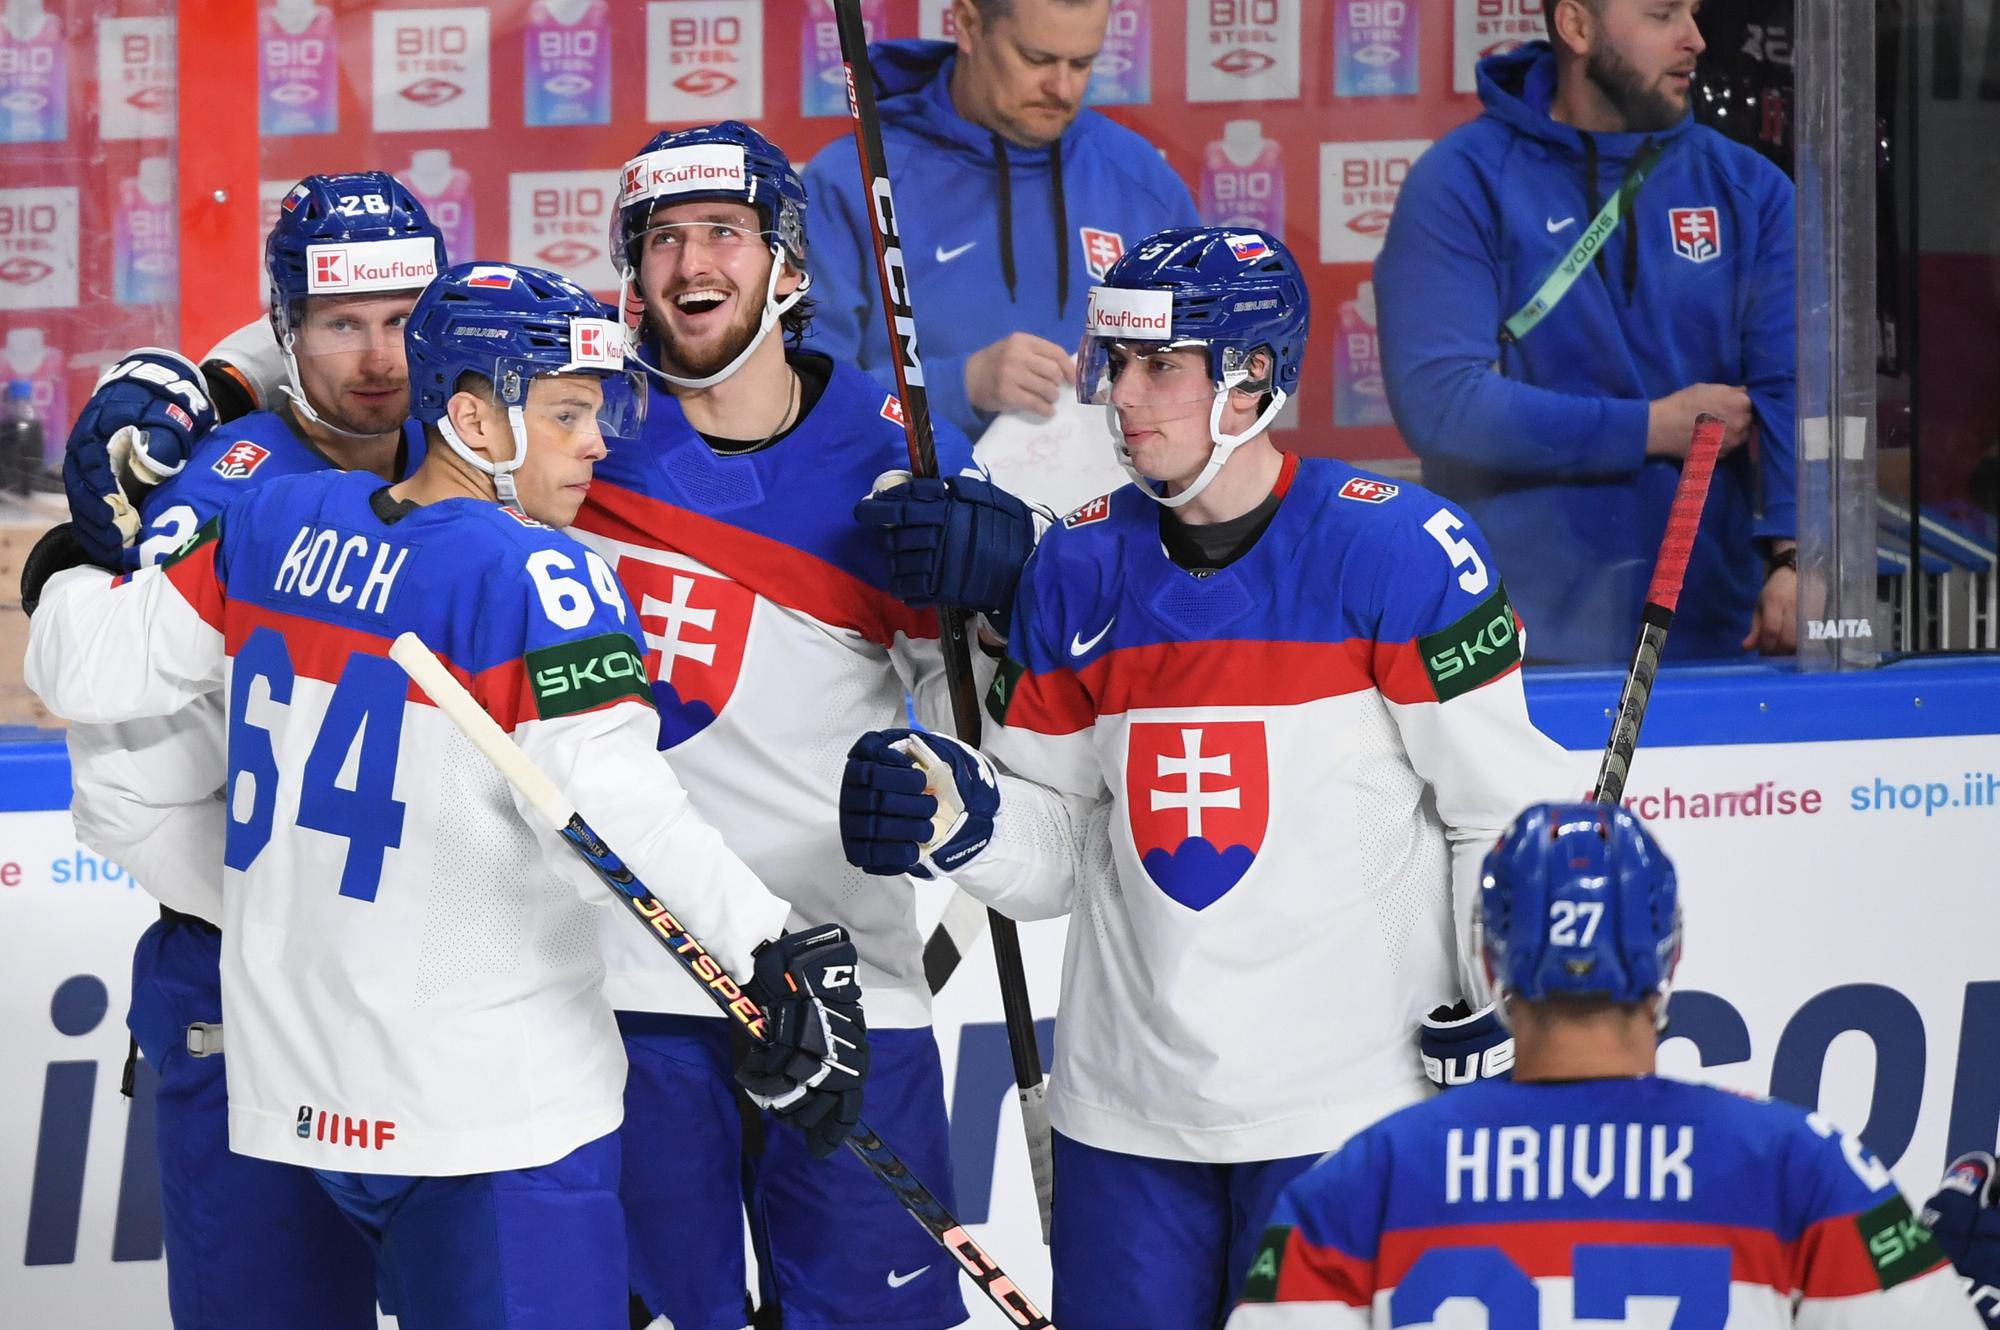 MS v hokeji 2023: Slovinsko - Slovensko (gólová radosť Slovákov)